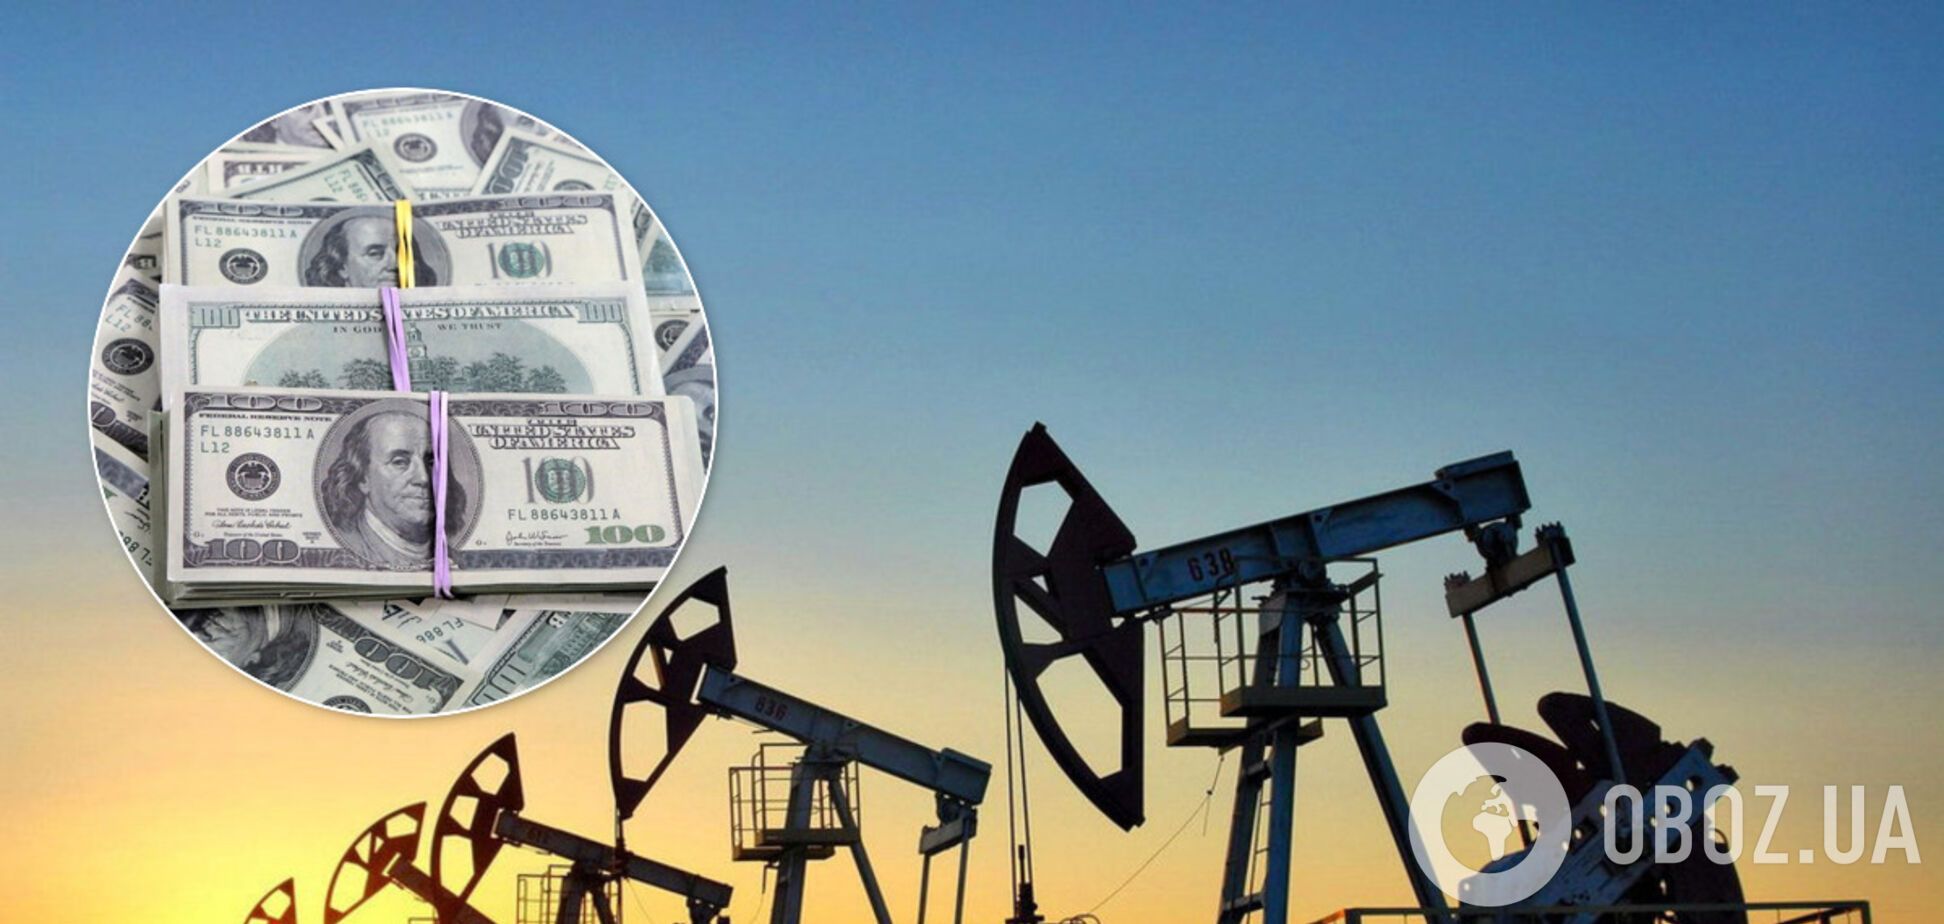 Цены на нефть взлетели накануне переговоров ОПЕК+ об ограничении добычи